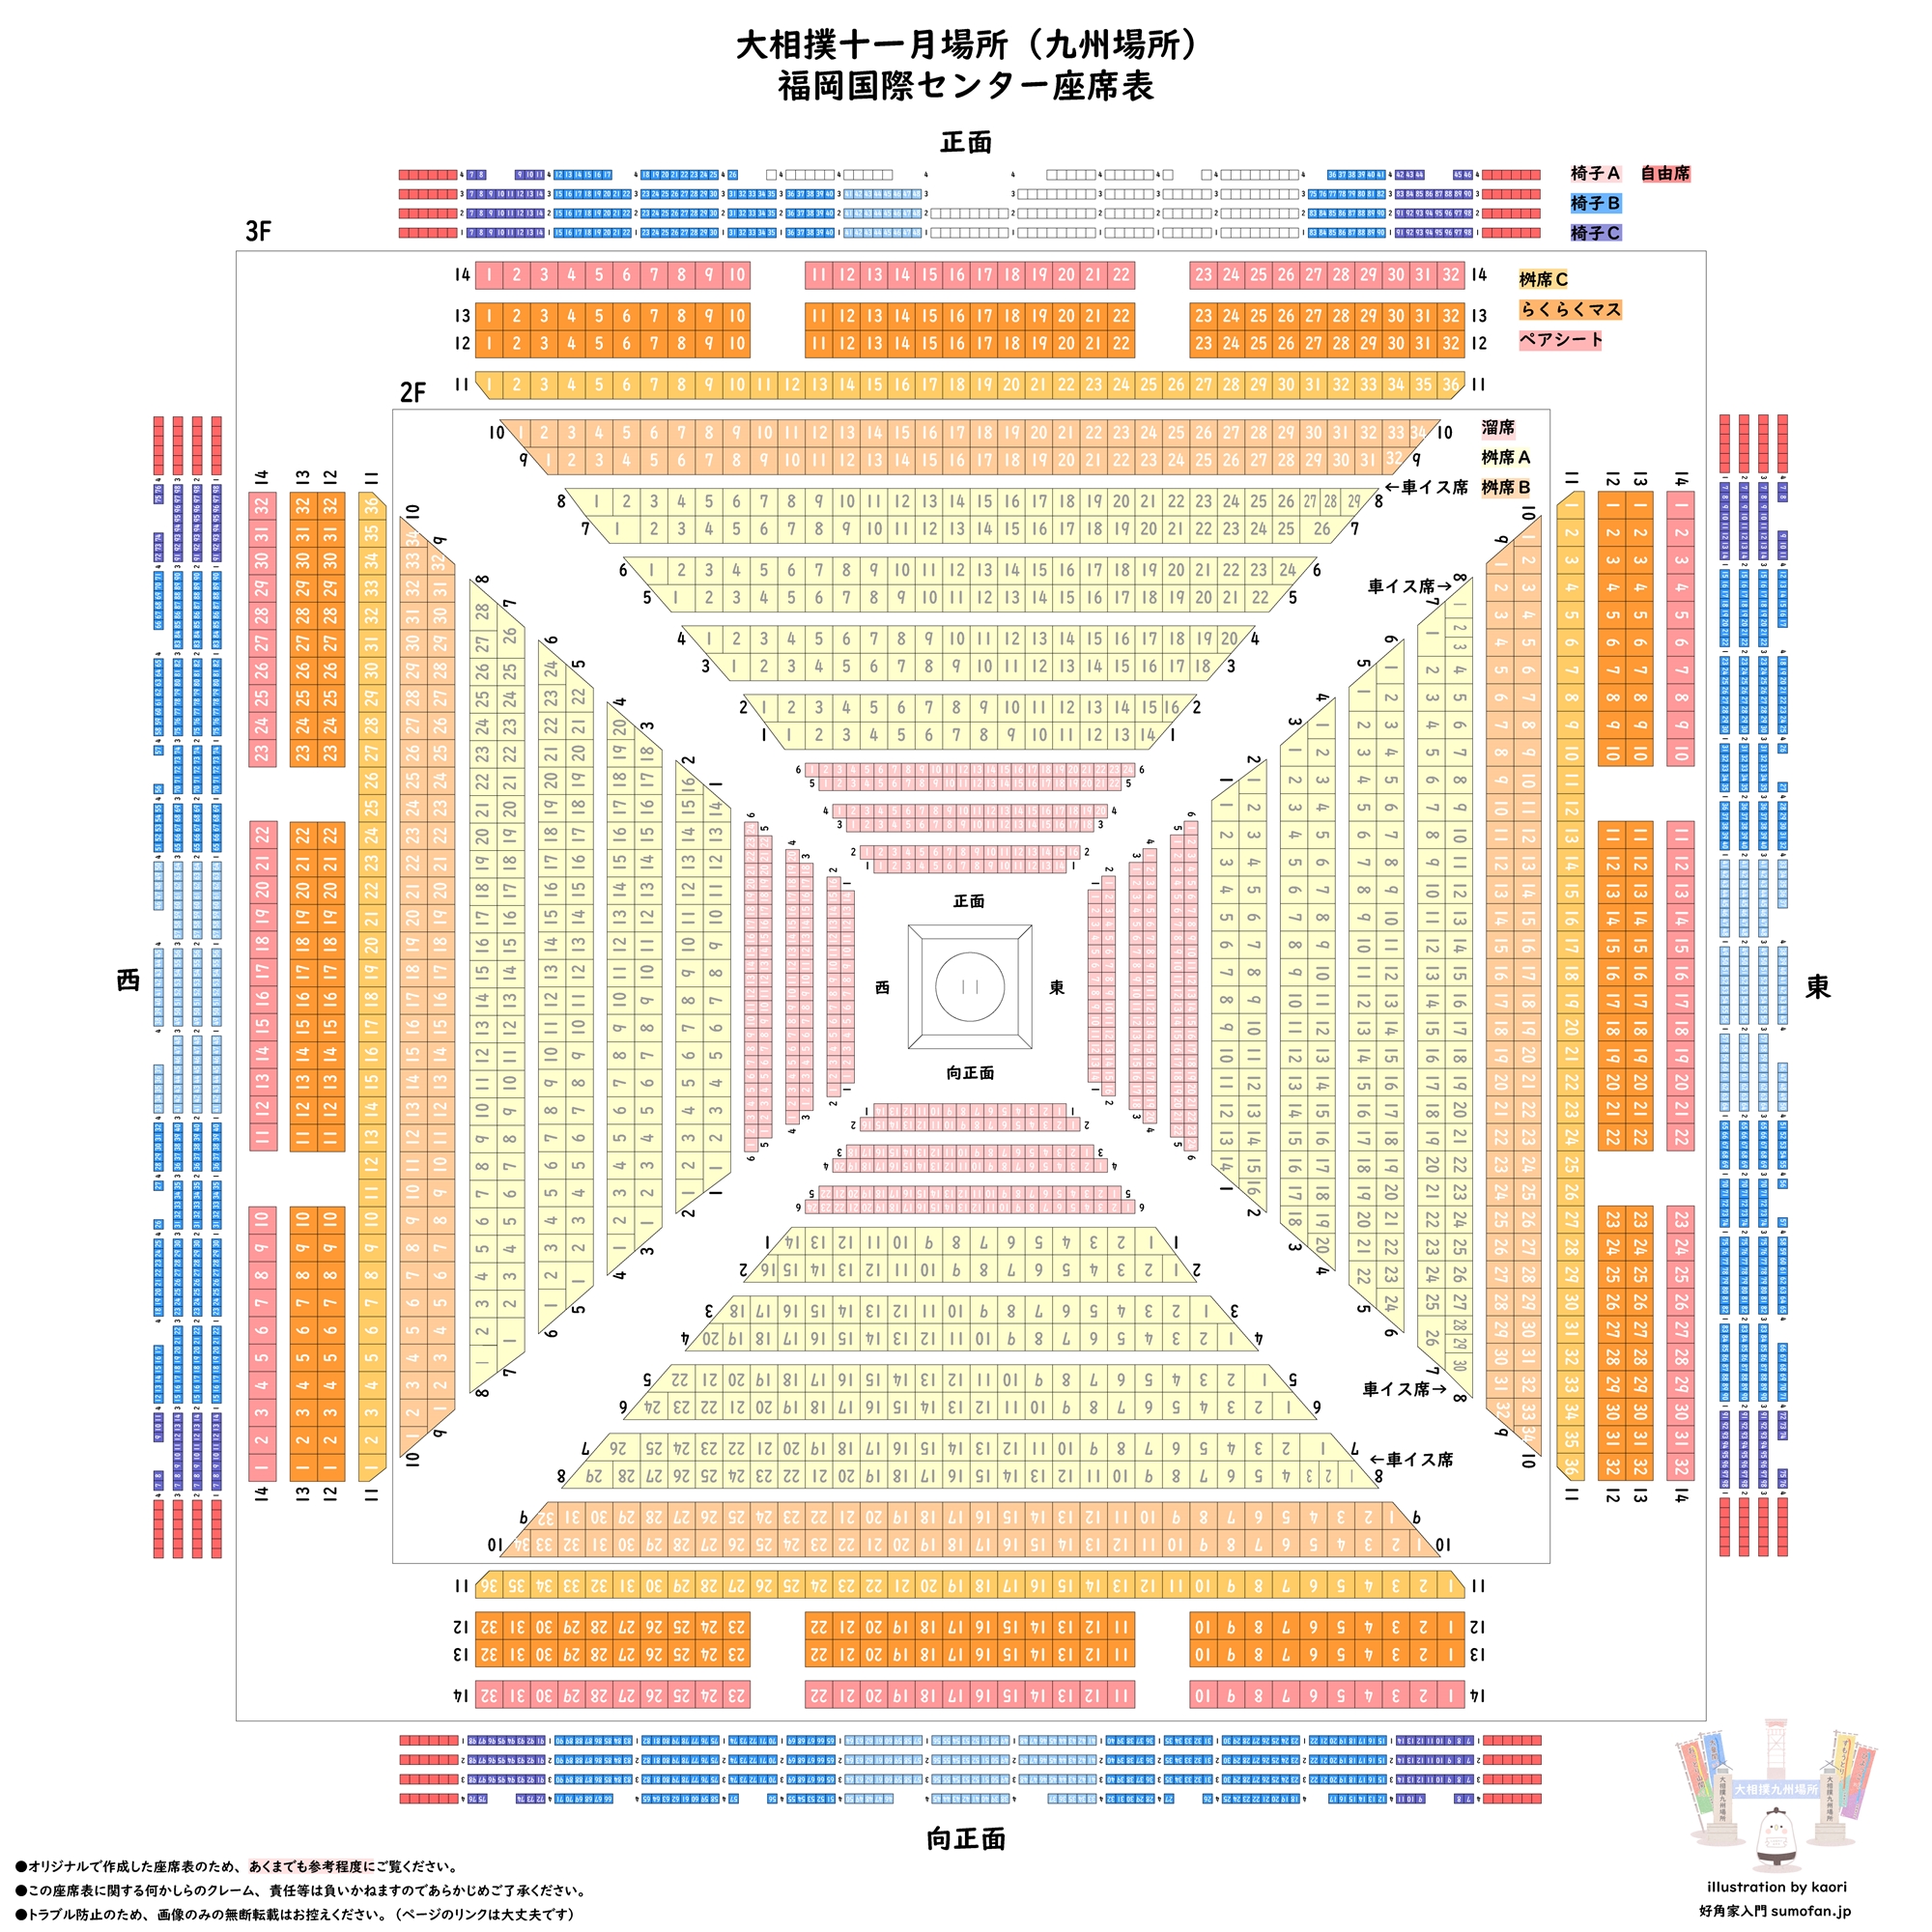 座席表あり】大相撲・九州場所（福岡国際センター）の座席の種類と料金